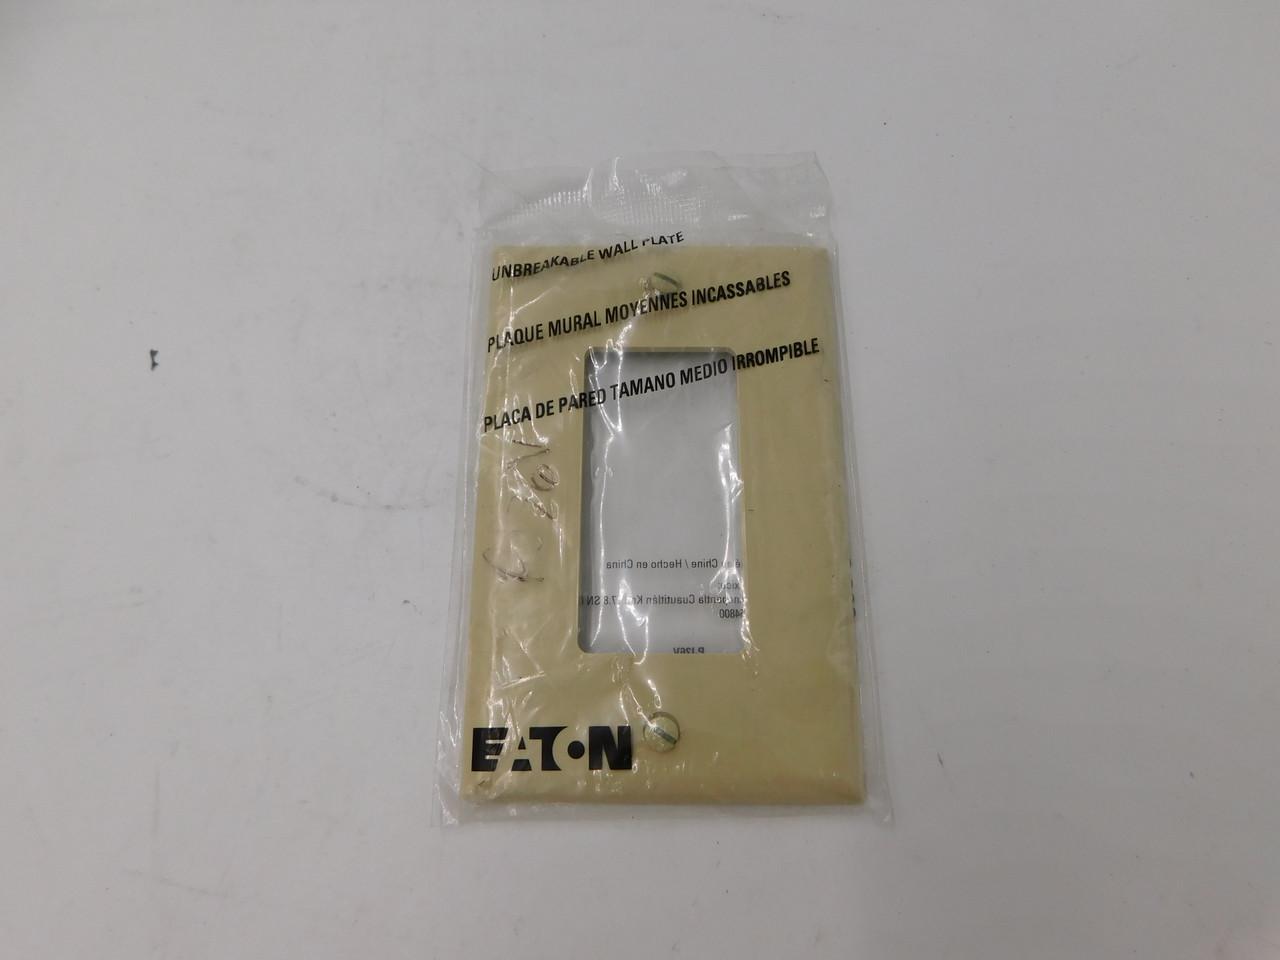 Eaton PJ26V Eaton - PJ26V